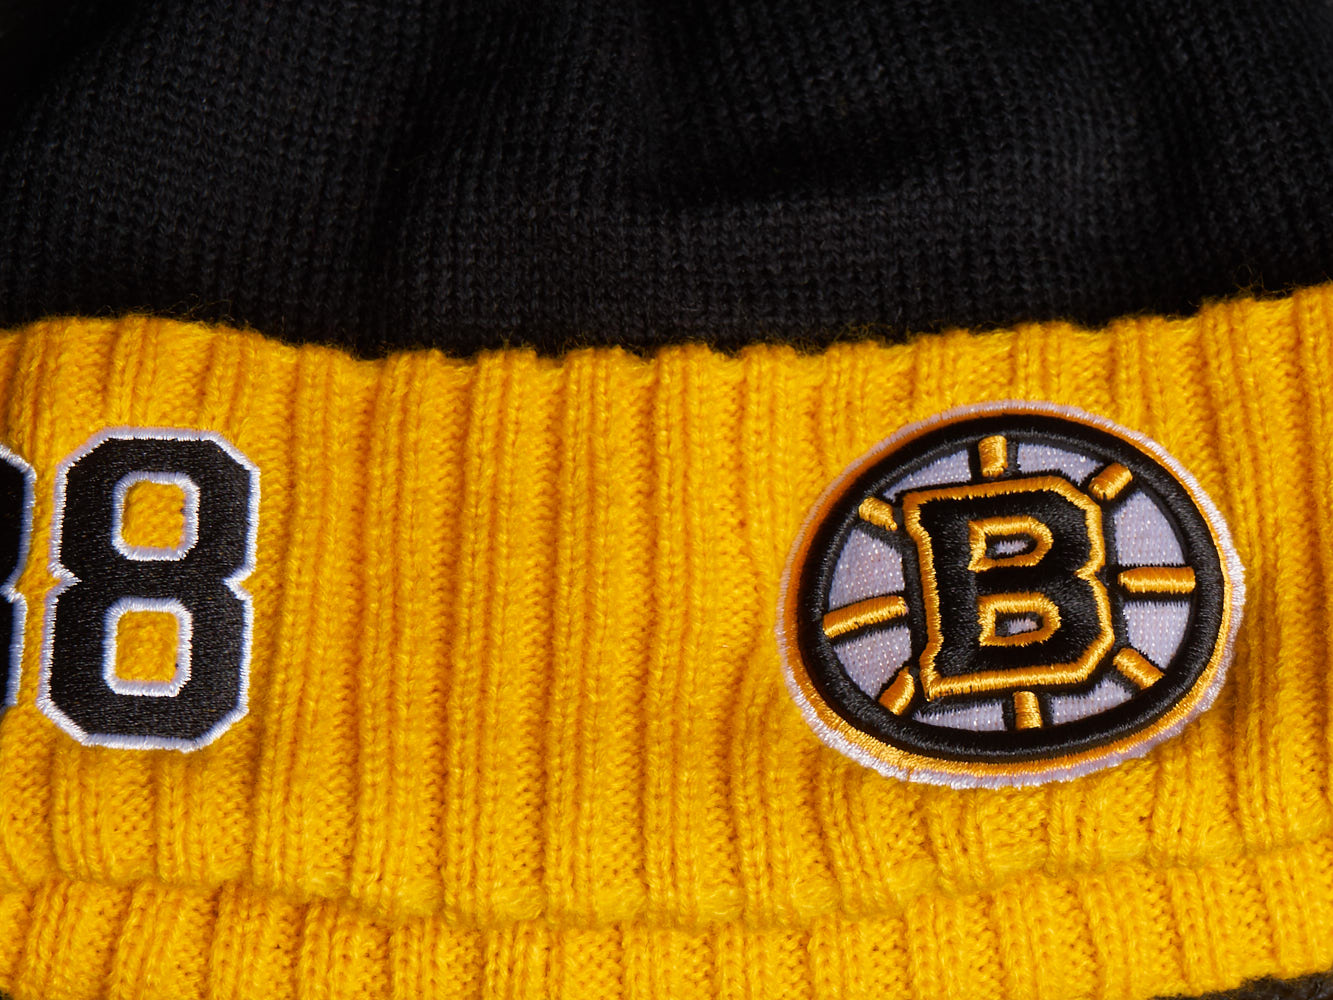 Шапка "NHL Boston Bruins" №88 с помпоном с вышивкой черно-желтая